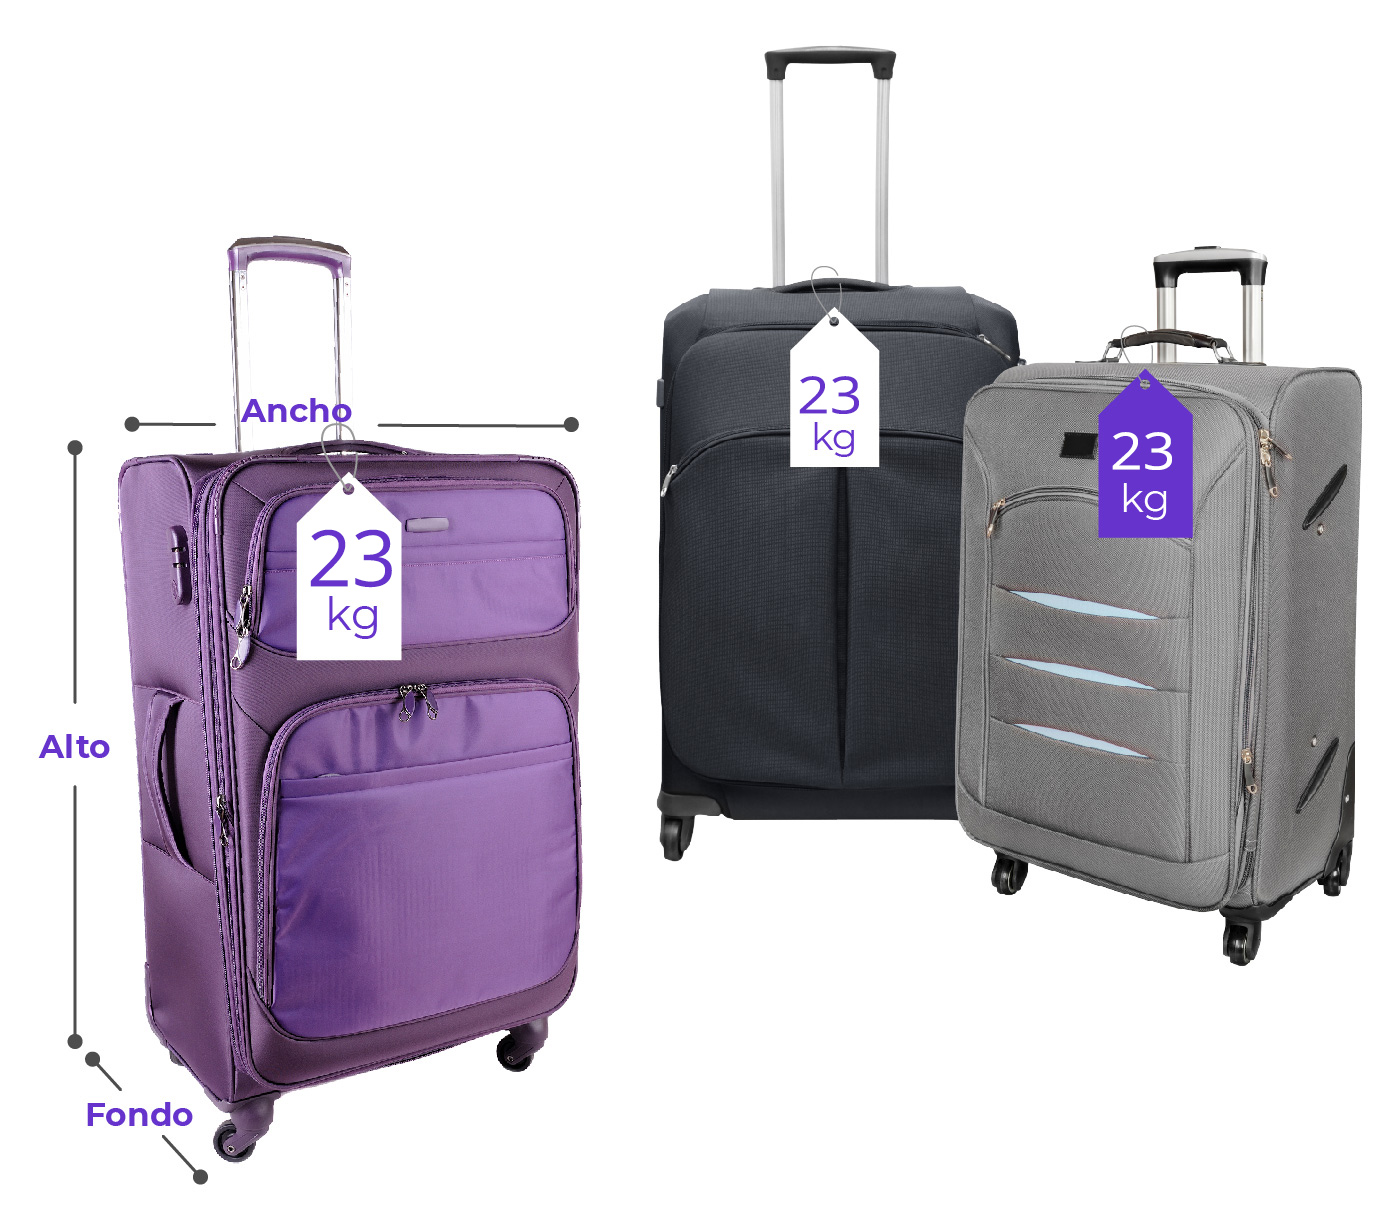 Medidas de maletas permitidas para viajar en avión | Wingo